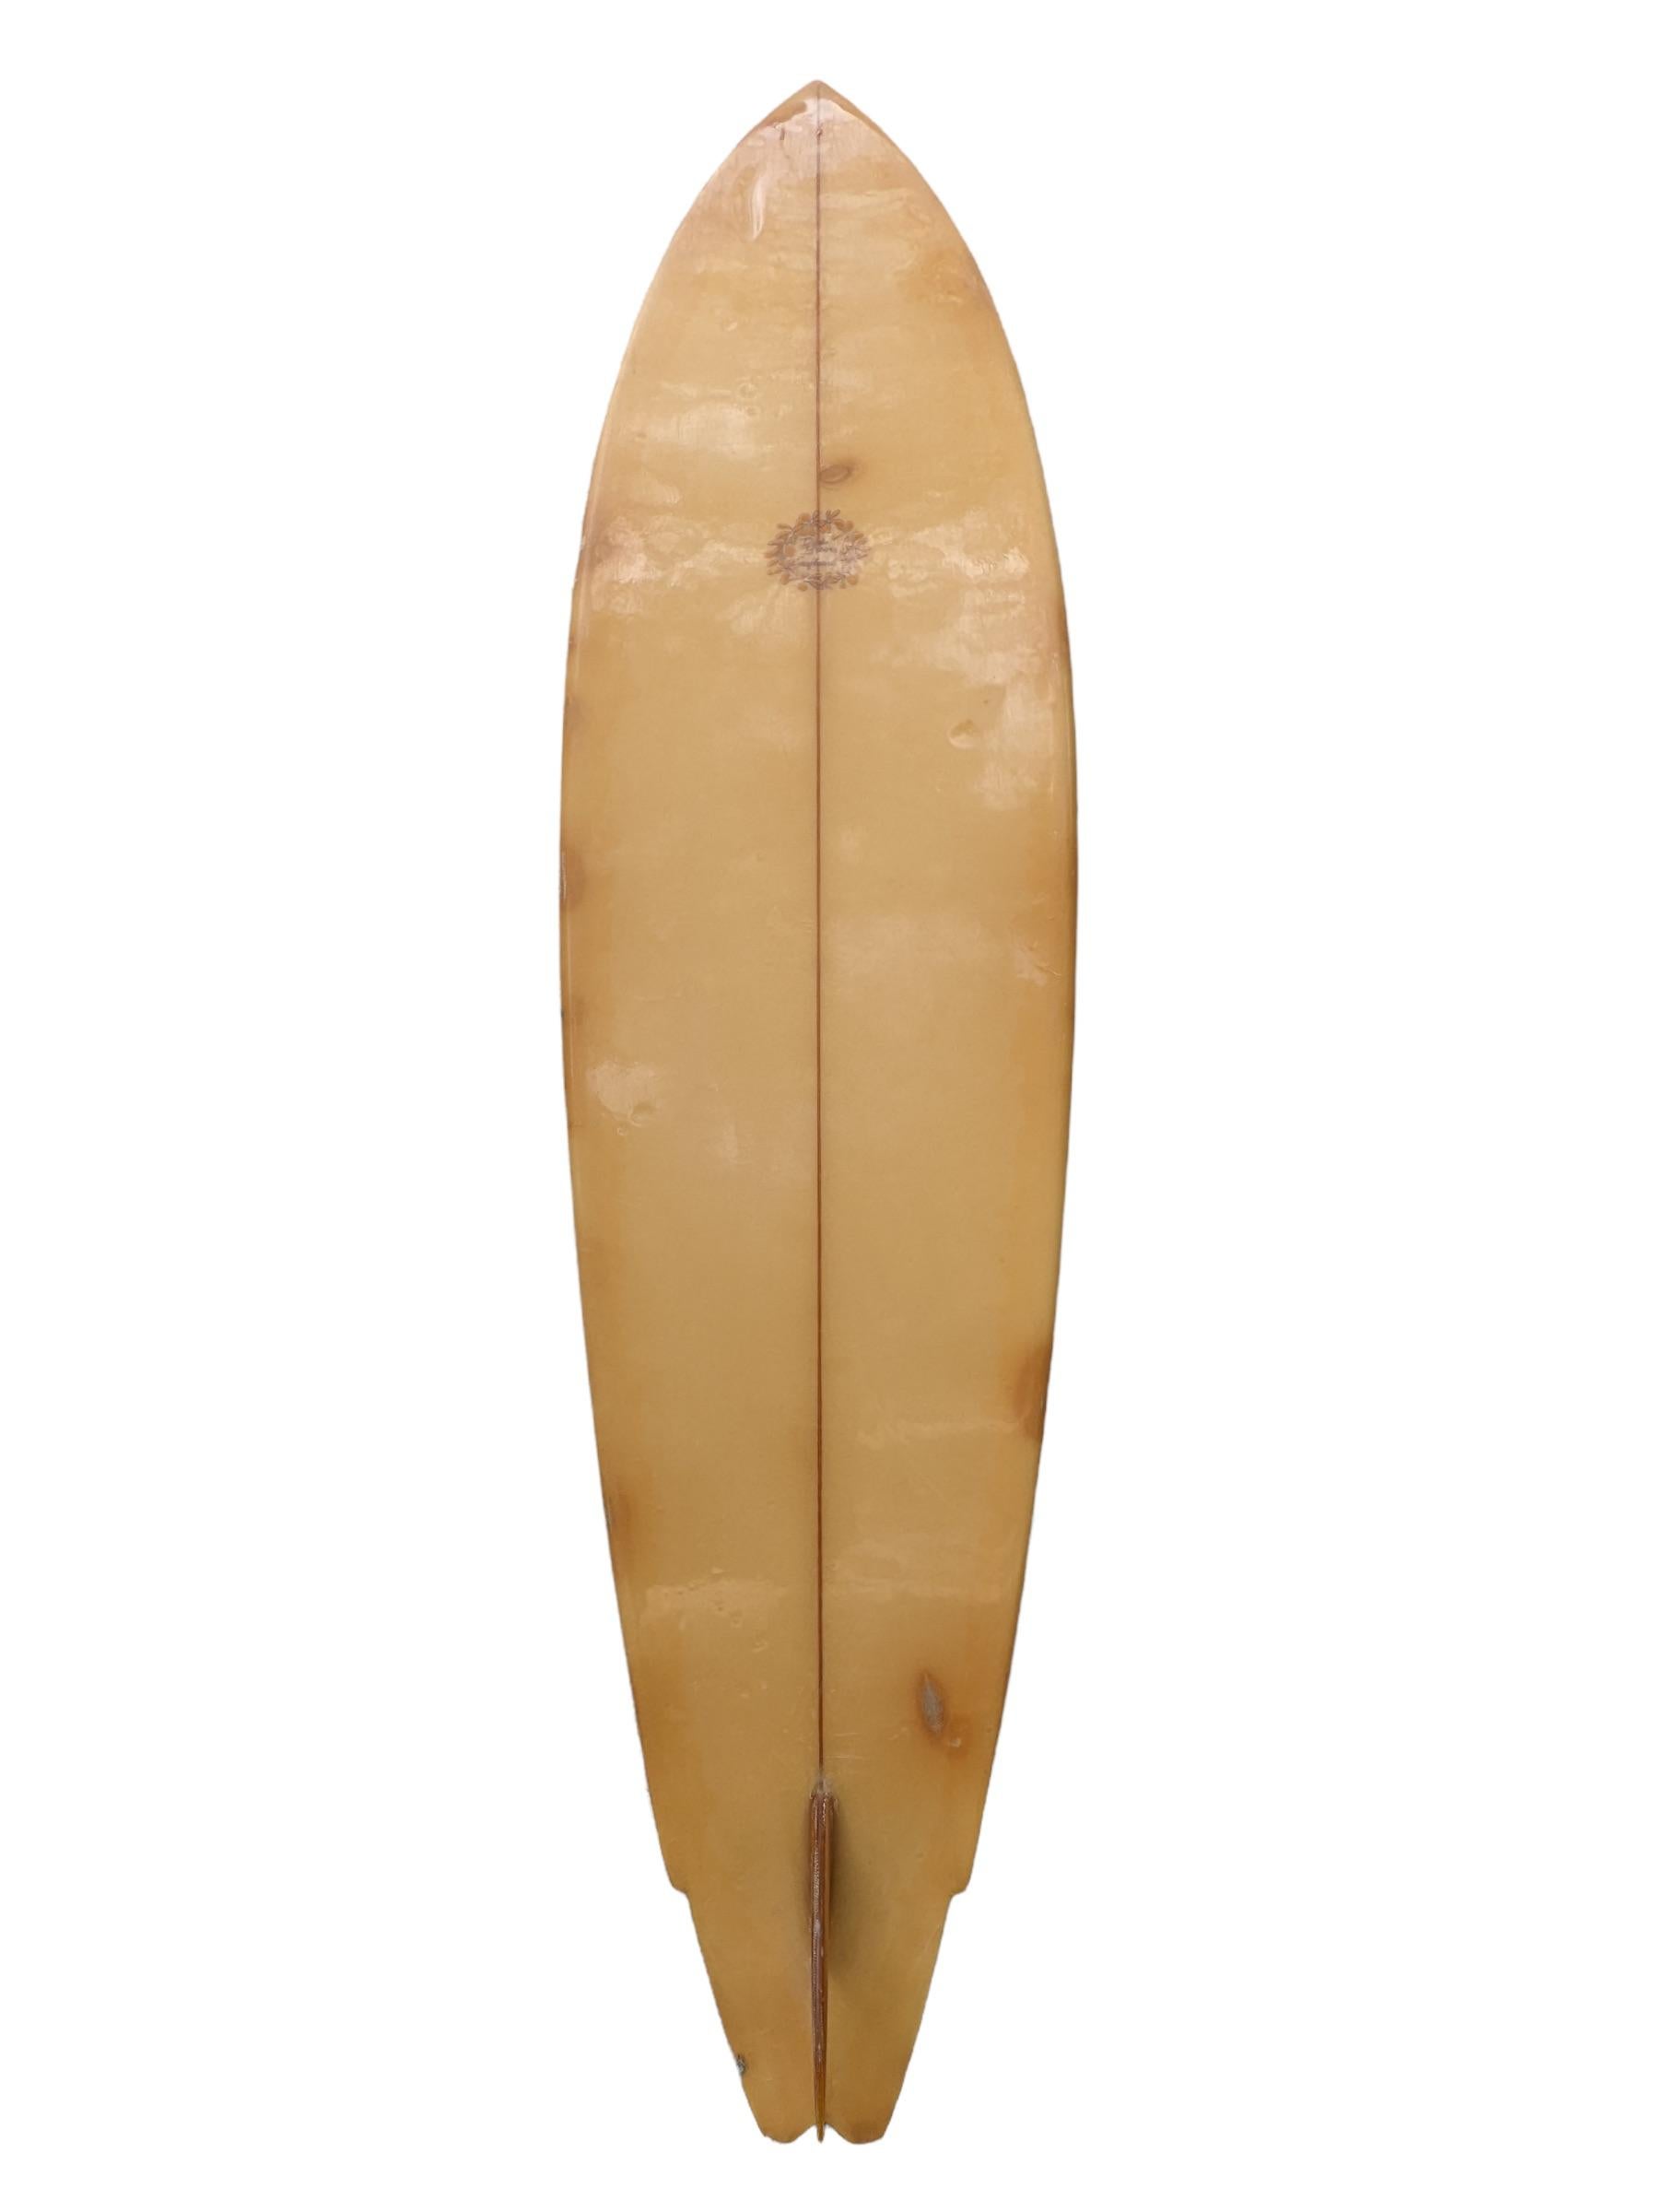 Planche de surf Dick Brewer de la fin des années 70, fabriquée par Bob Ricard. De teinte jaune, avec un design en forme de queue d'hirondelle ailée. Rayures centrales, contour de la planche rayé et aileron simple vitré. Un magnifique shortboard des